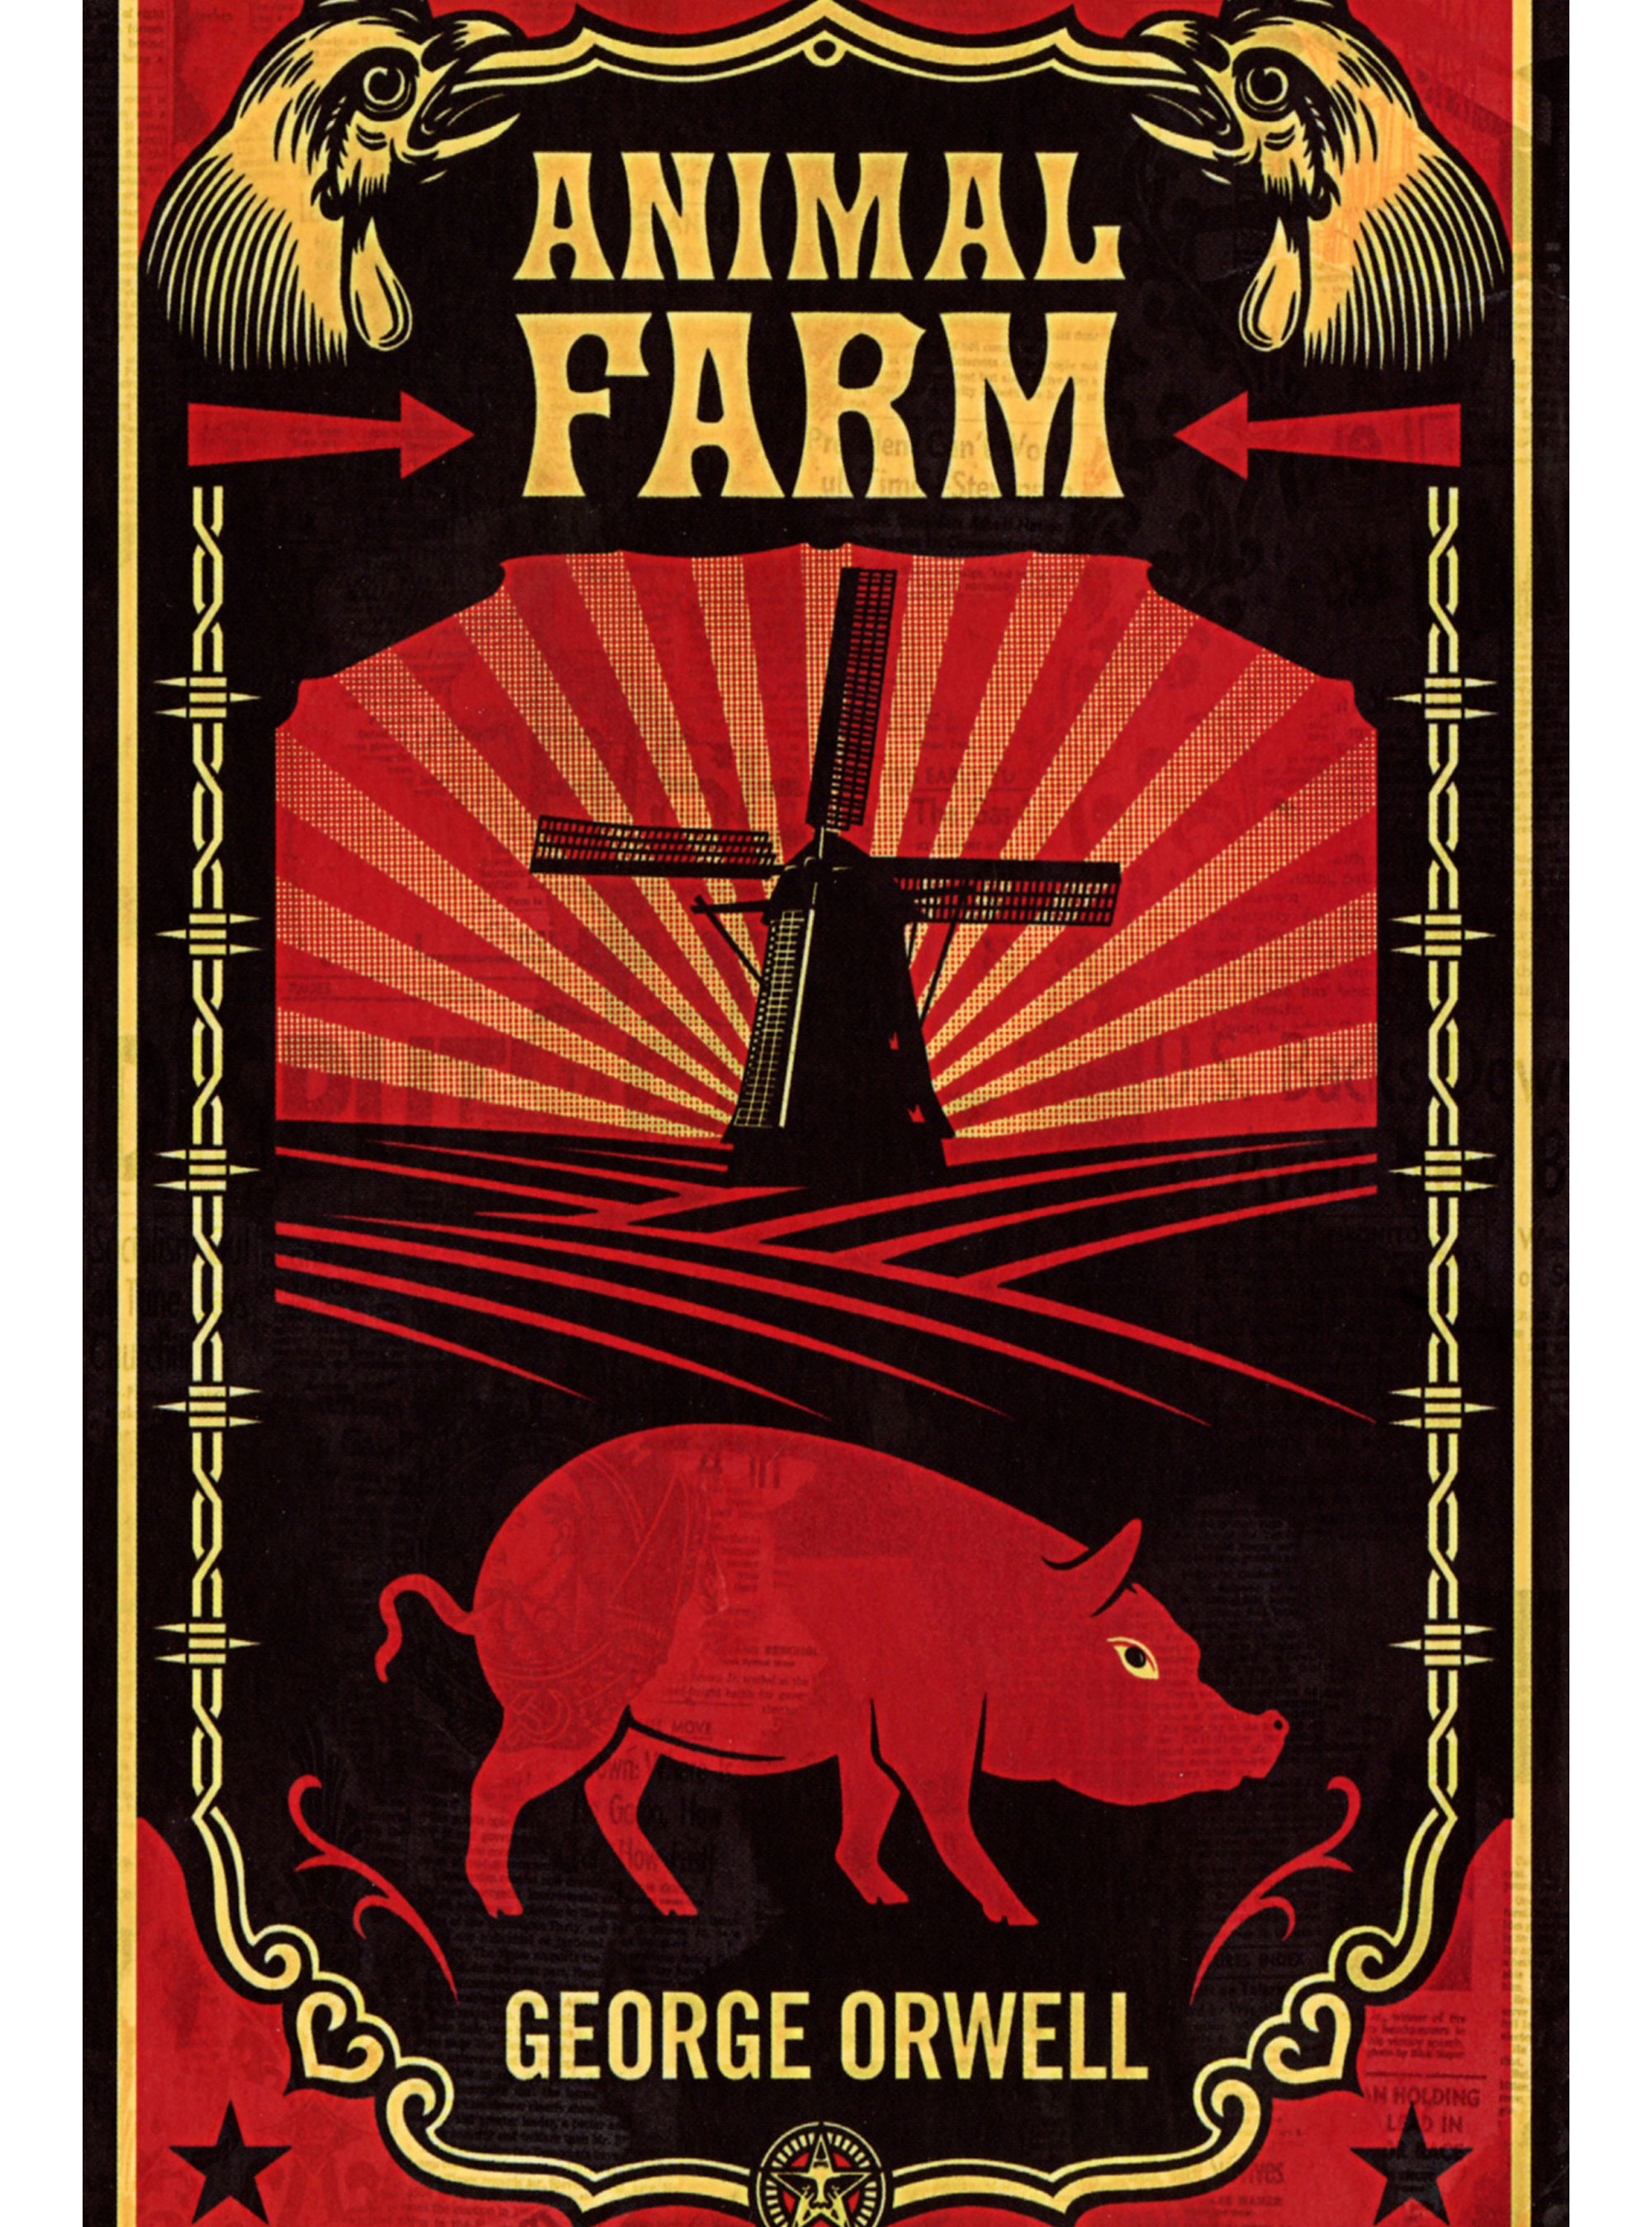 Animal Farm, by George Orwell | V5 blog